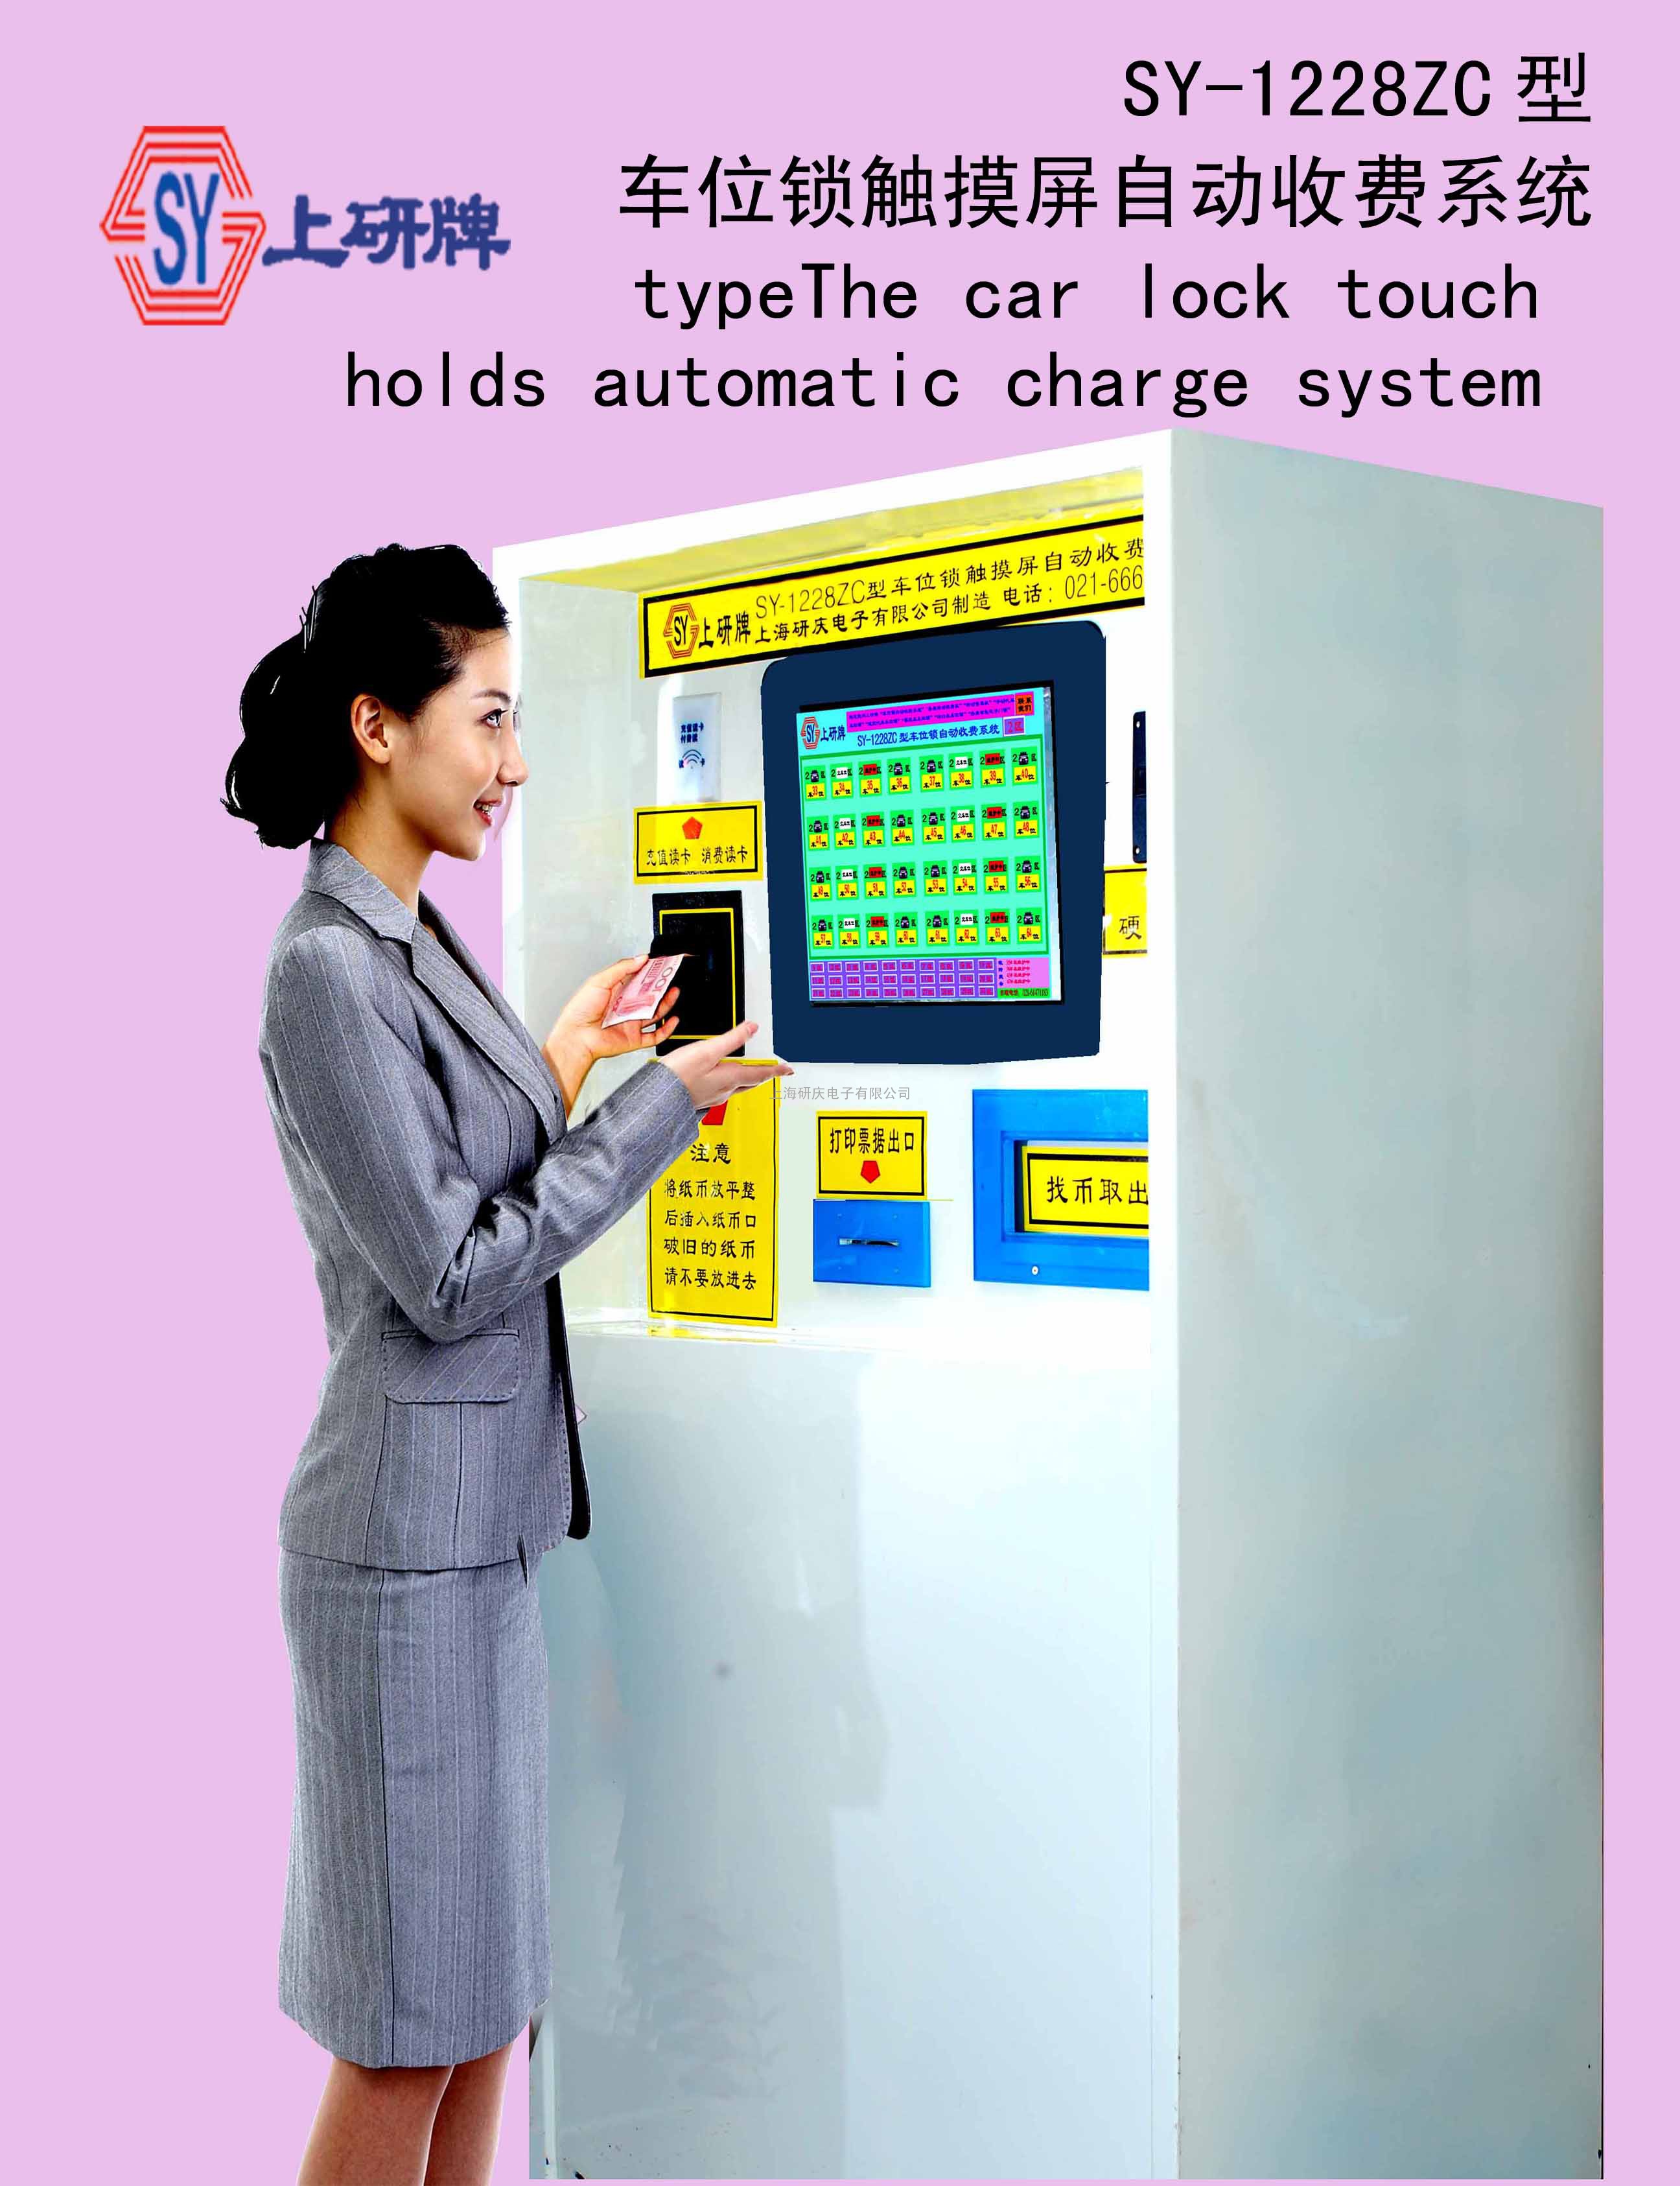 SY-1228ZC型车位锁触摸屏自动收费系统